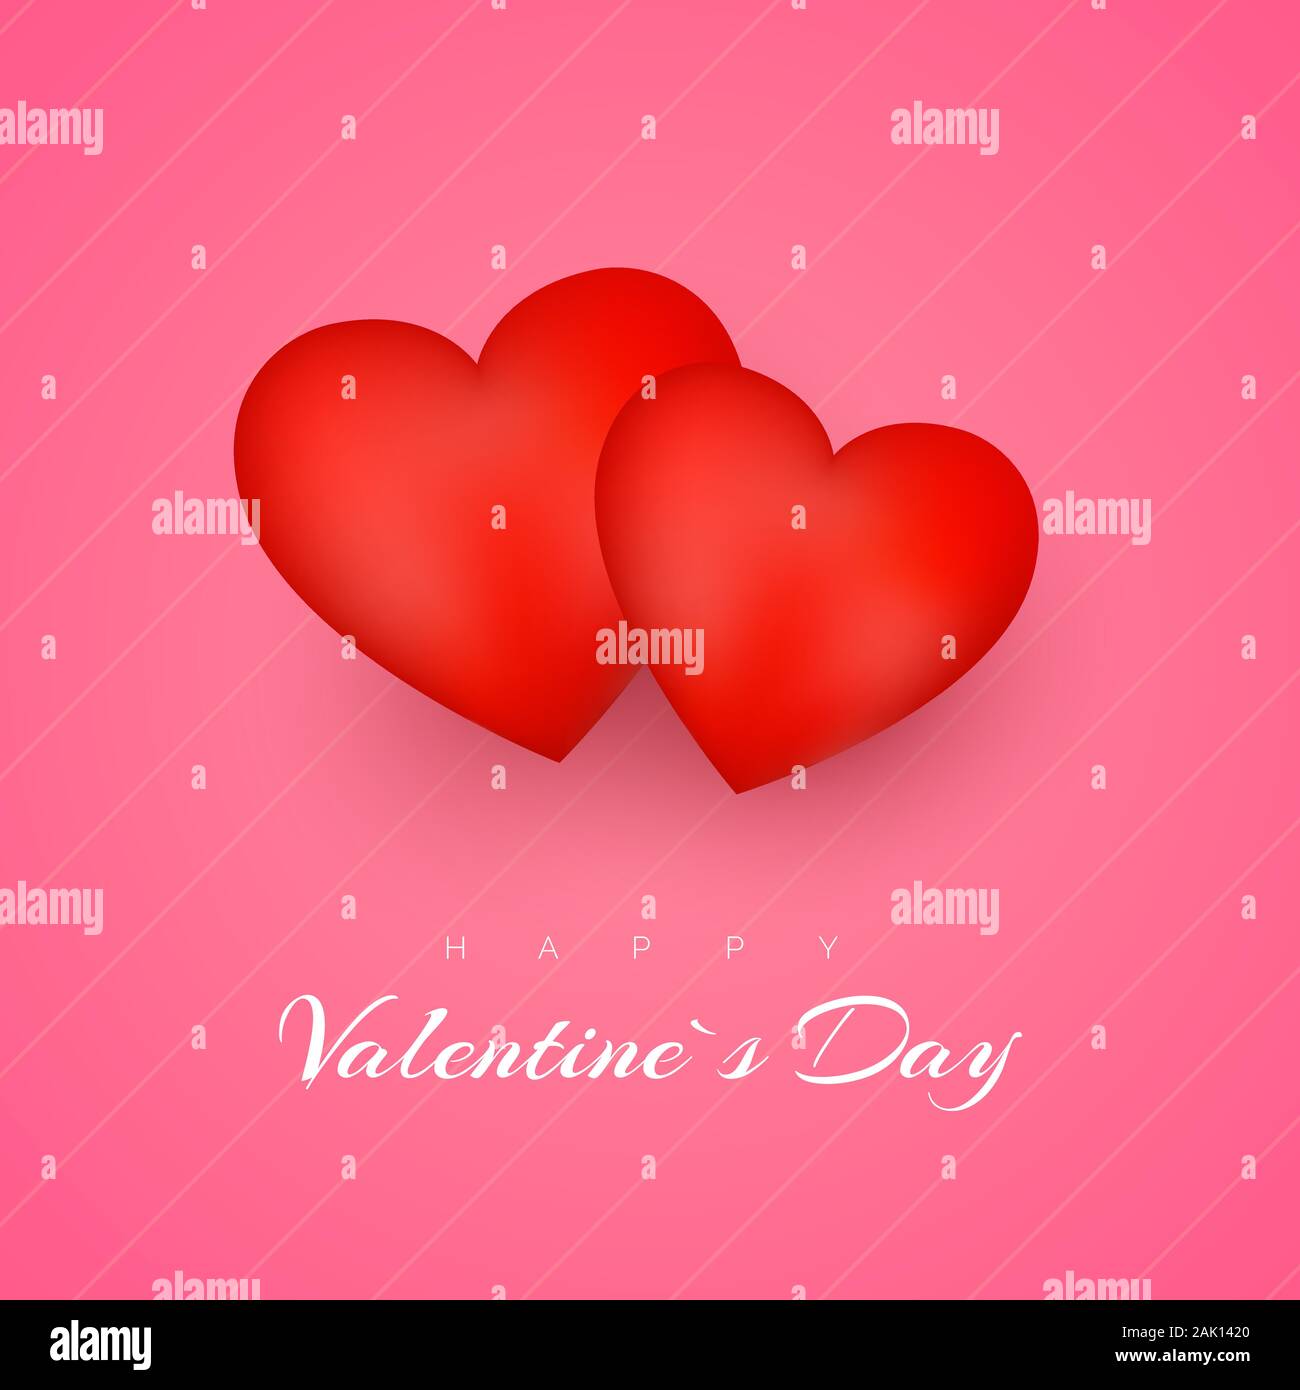 Valentinstag Grusskarten oder Einladung. Februar 14 Tag der Liebe und Romantik. Holiday Banner mit roten Herzen. Vector Illustration Stock Vektor